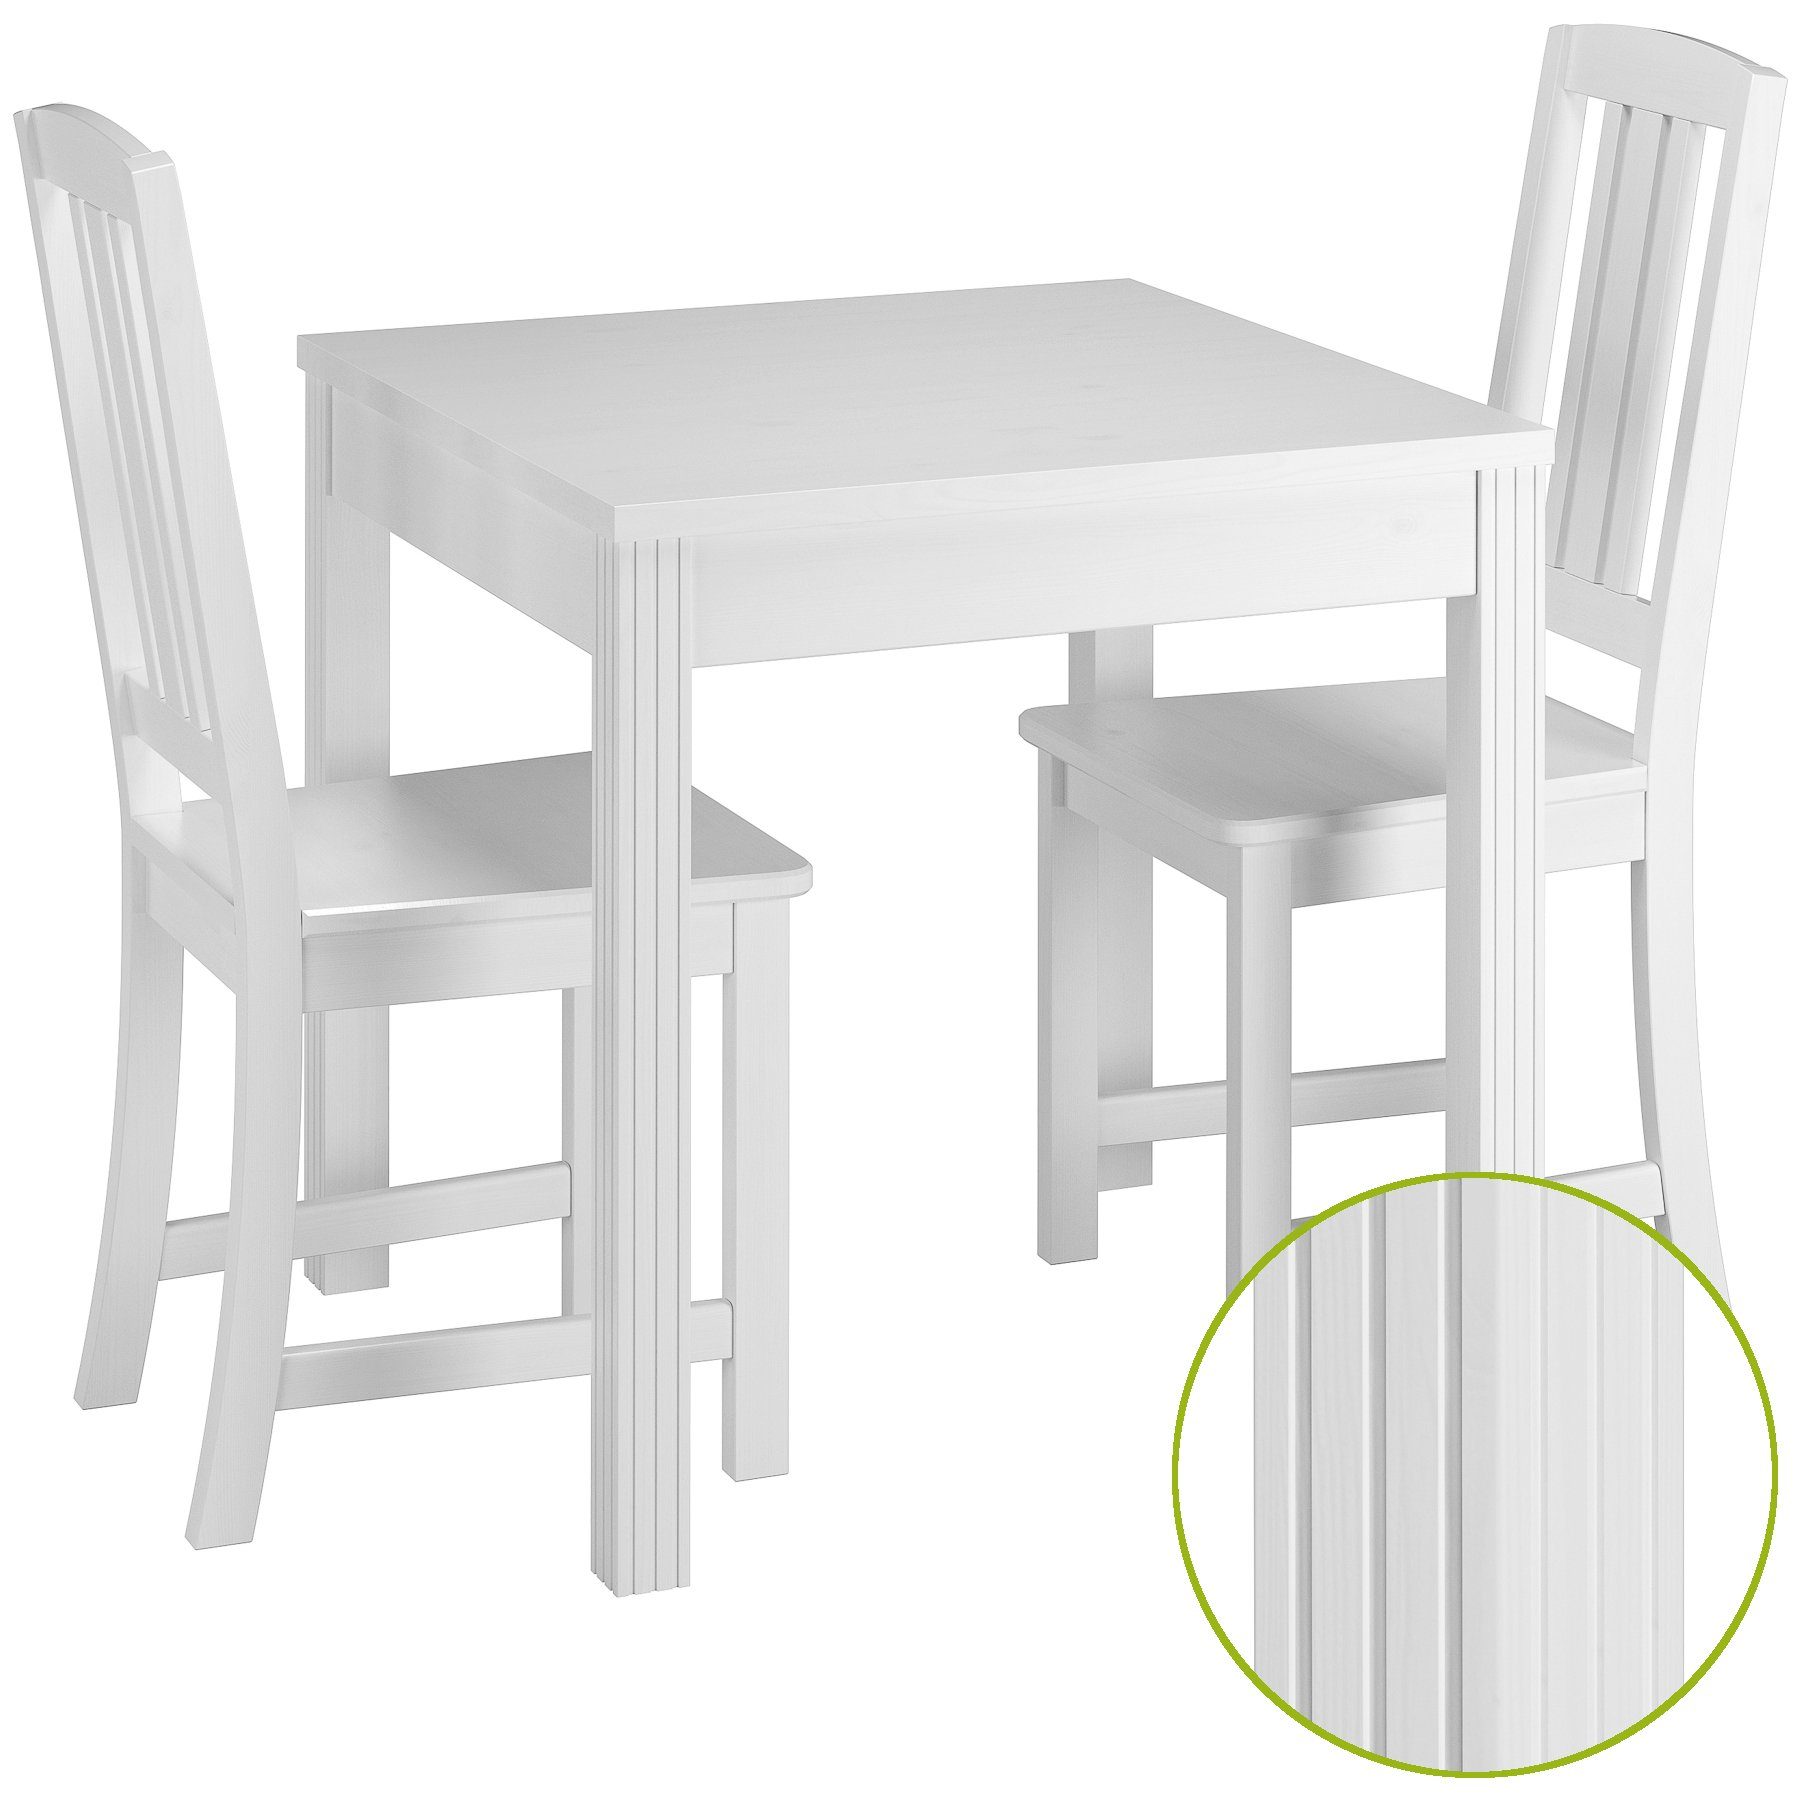 ERST-HOLZ Essgruppe Schöne Essgruppe und Kiefer Tisch waschweiß Massivholz 2 mit Stühle